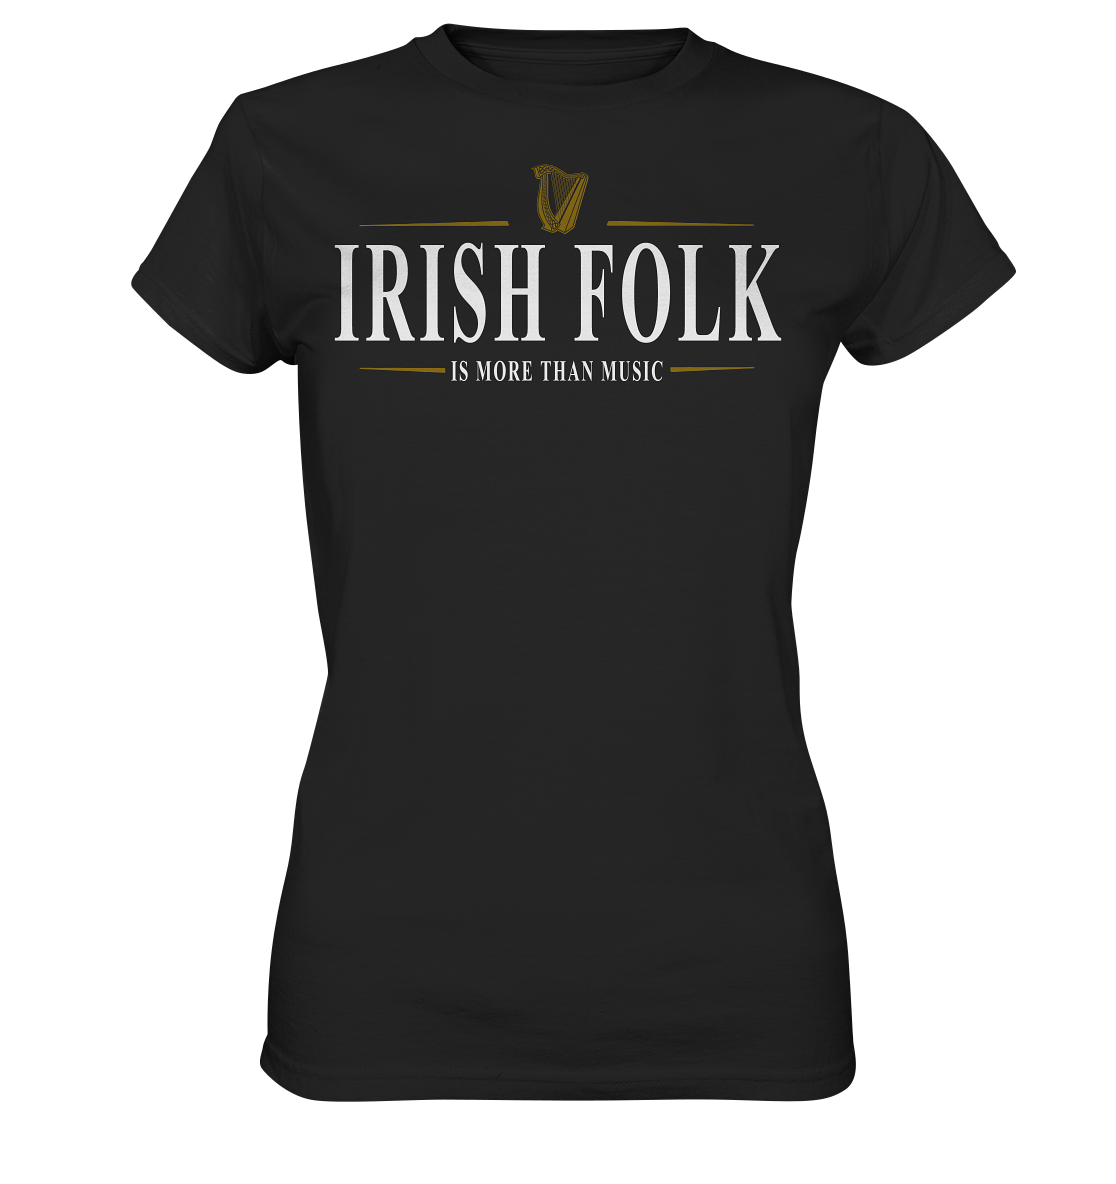 Irish Folk "Is More Than Music" - Ladies Premium Shirt